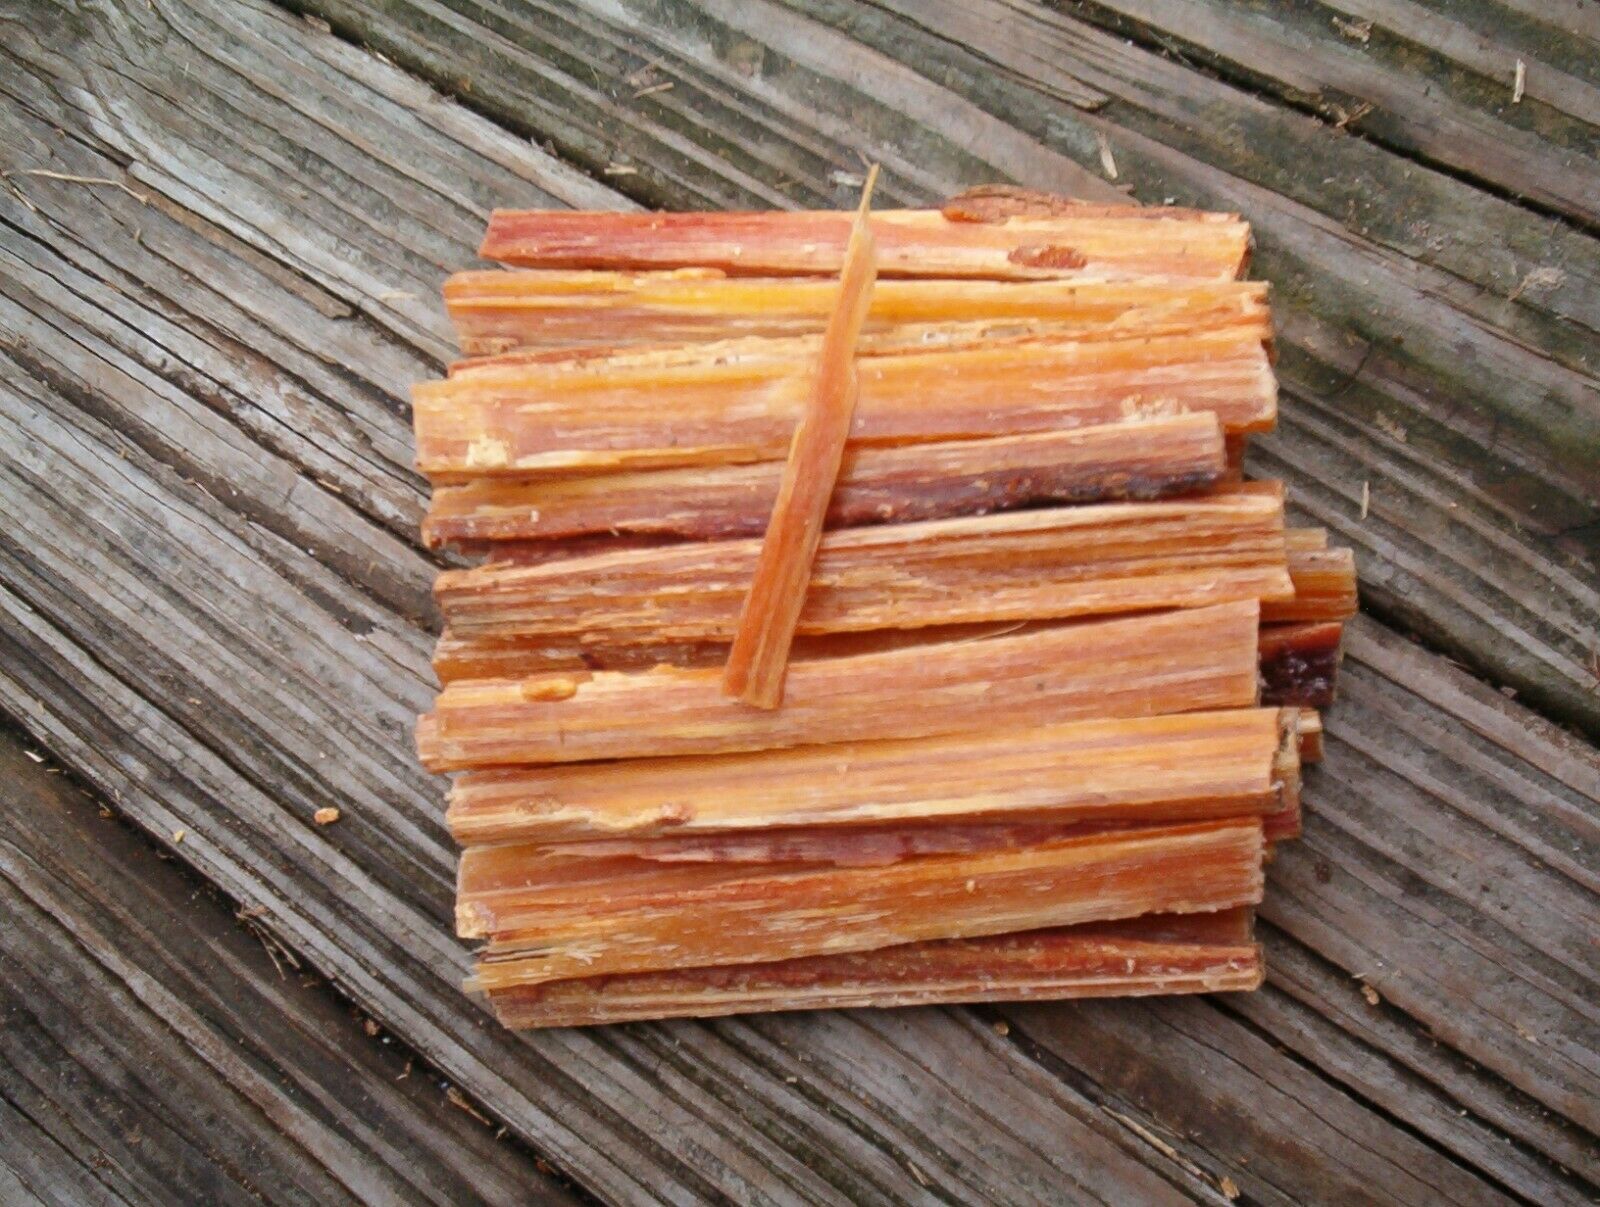 Fat Lighter Fatwood Kindling Fire Starter Wood Tinder Sticks *8 Ounces* 2 For 4